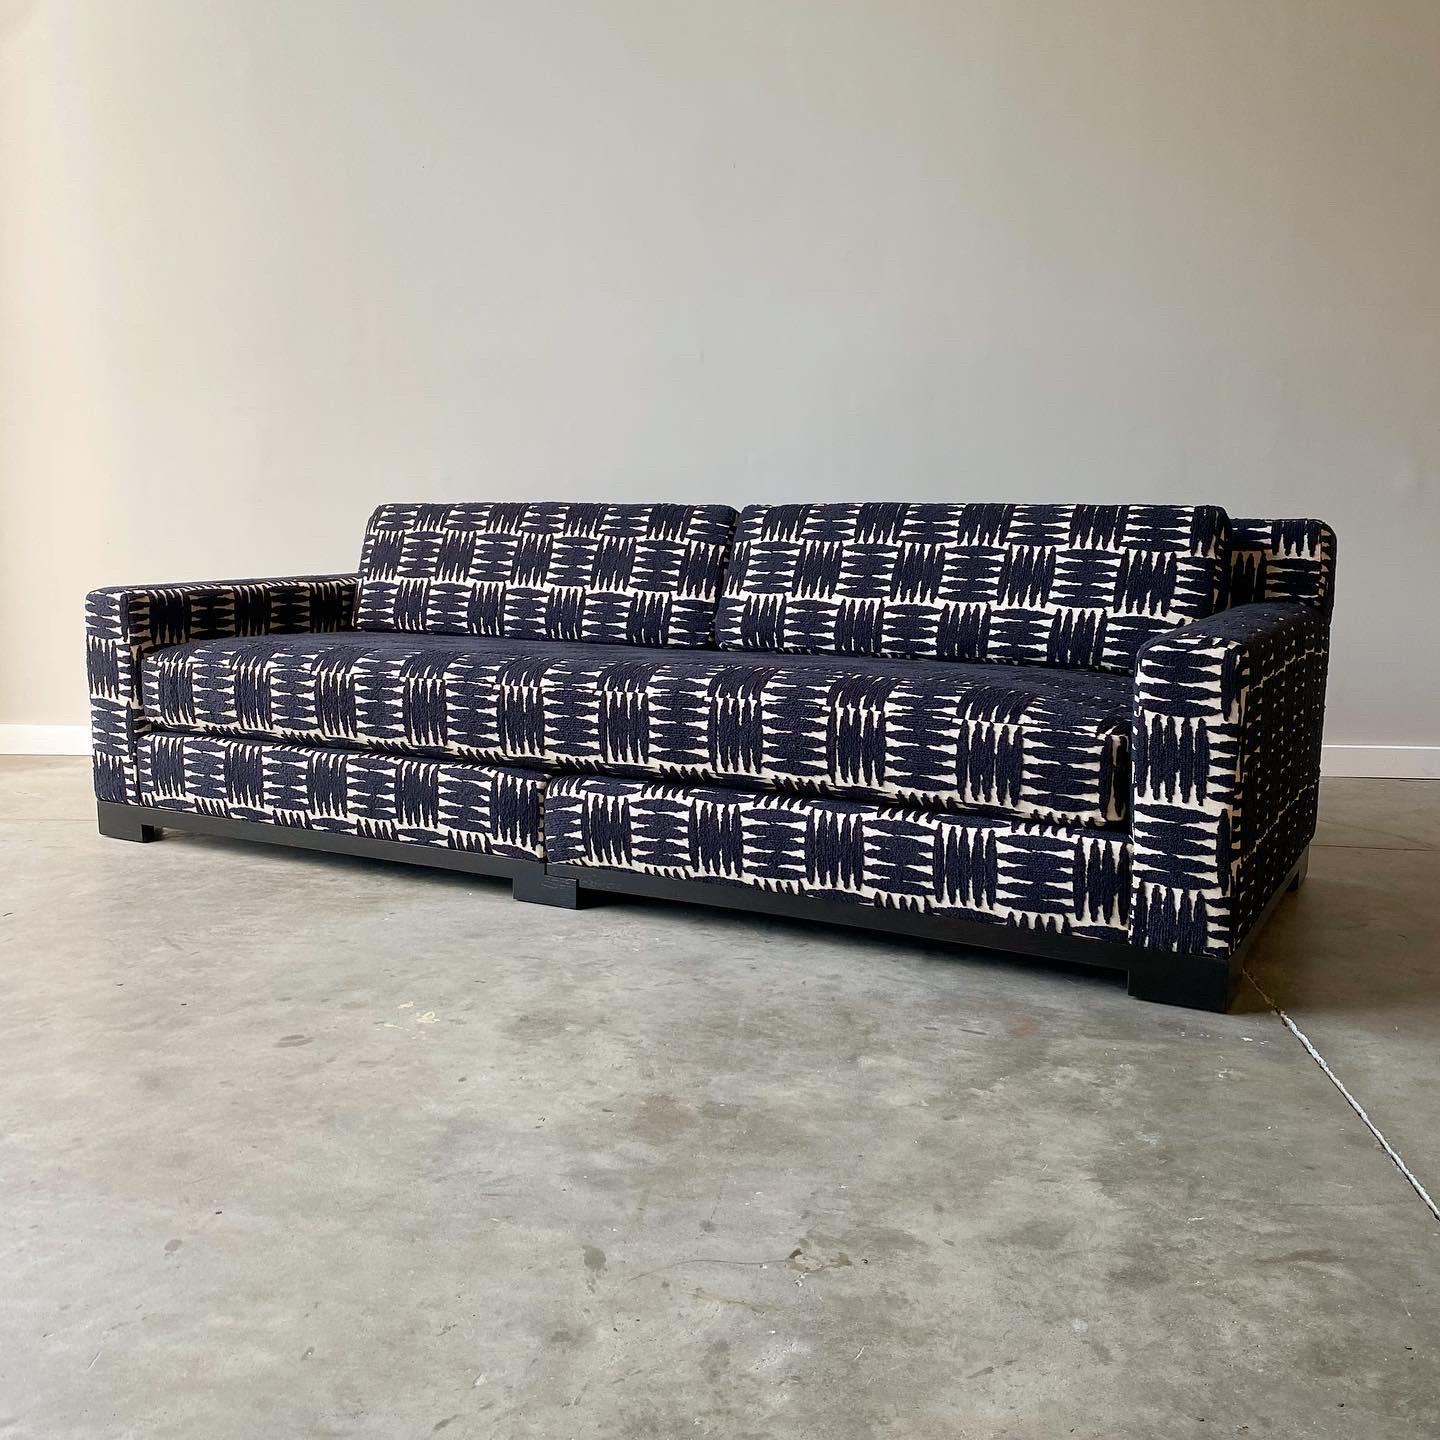 Une conception simple et étonnante de Christian Liaigre, réalisée par Holly HUNT.  Ce canapé deux pièces est très profond et confortable et est nouvellement tapissé dans un tissu de coton abstrait texturé saisissant.

mesure 101